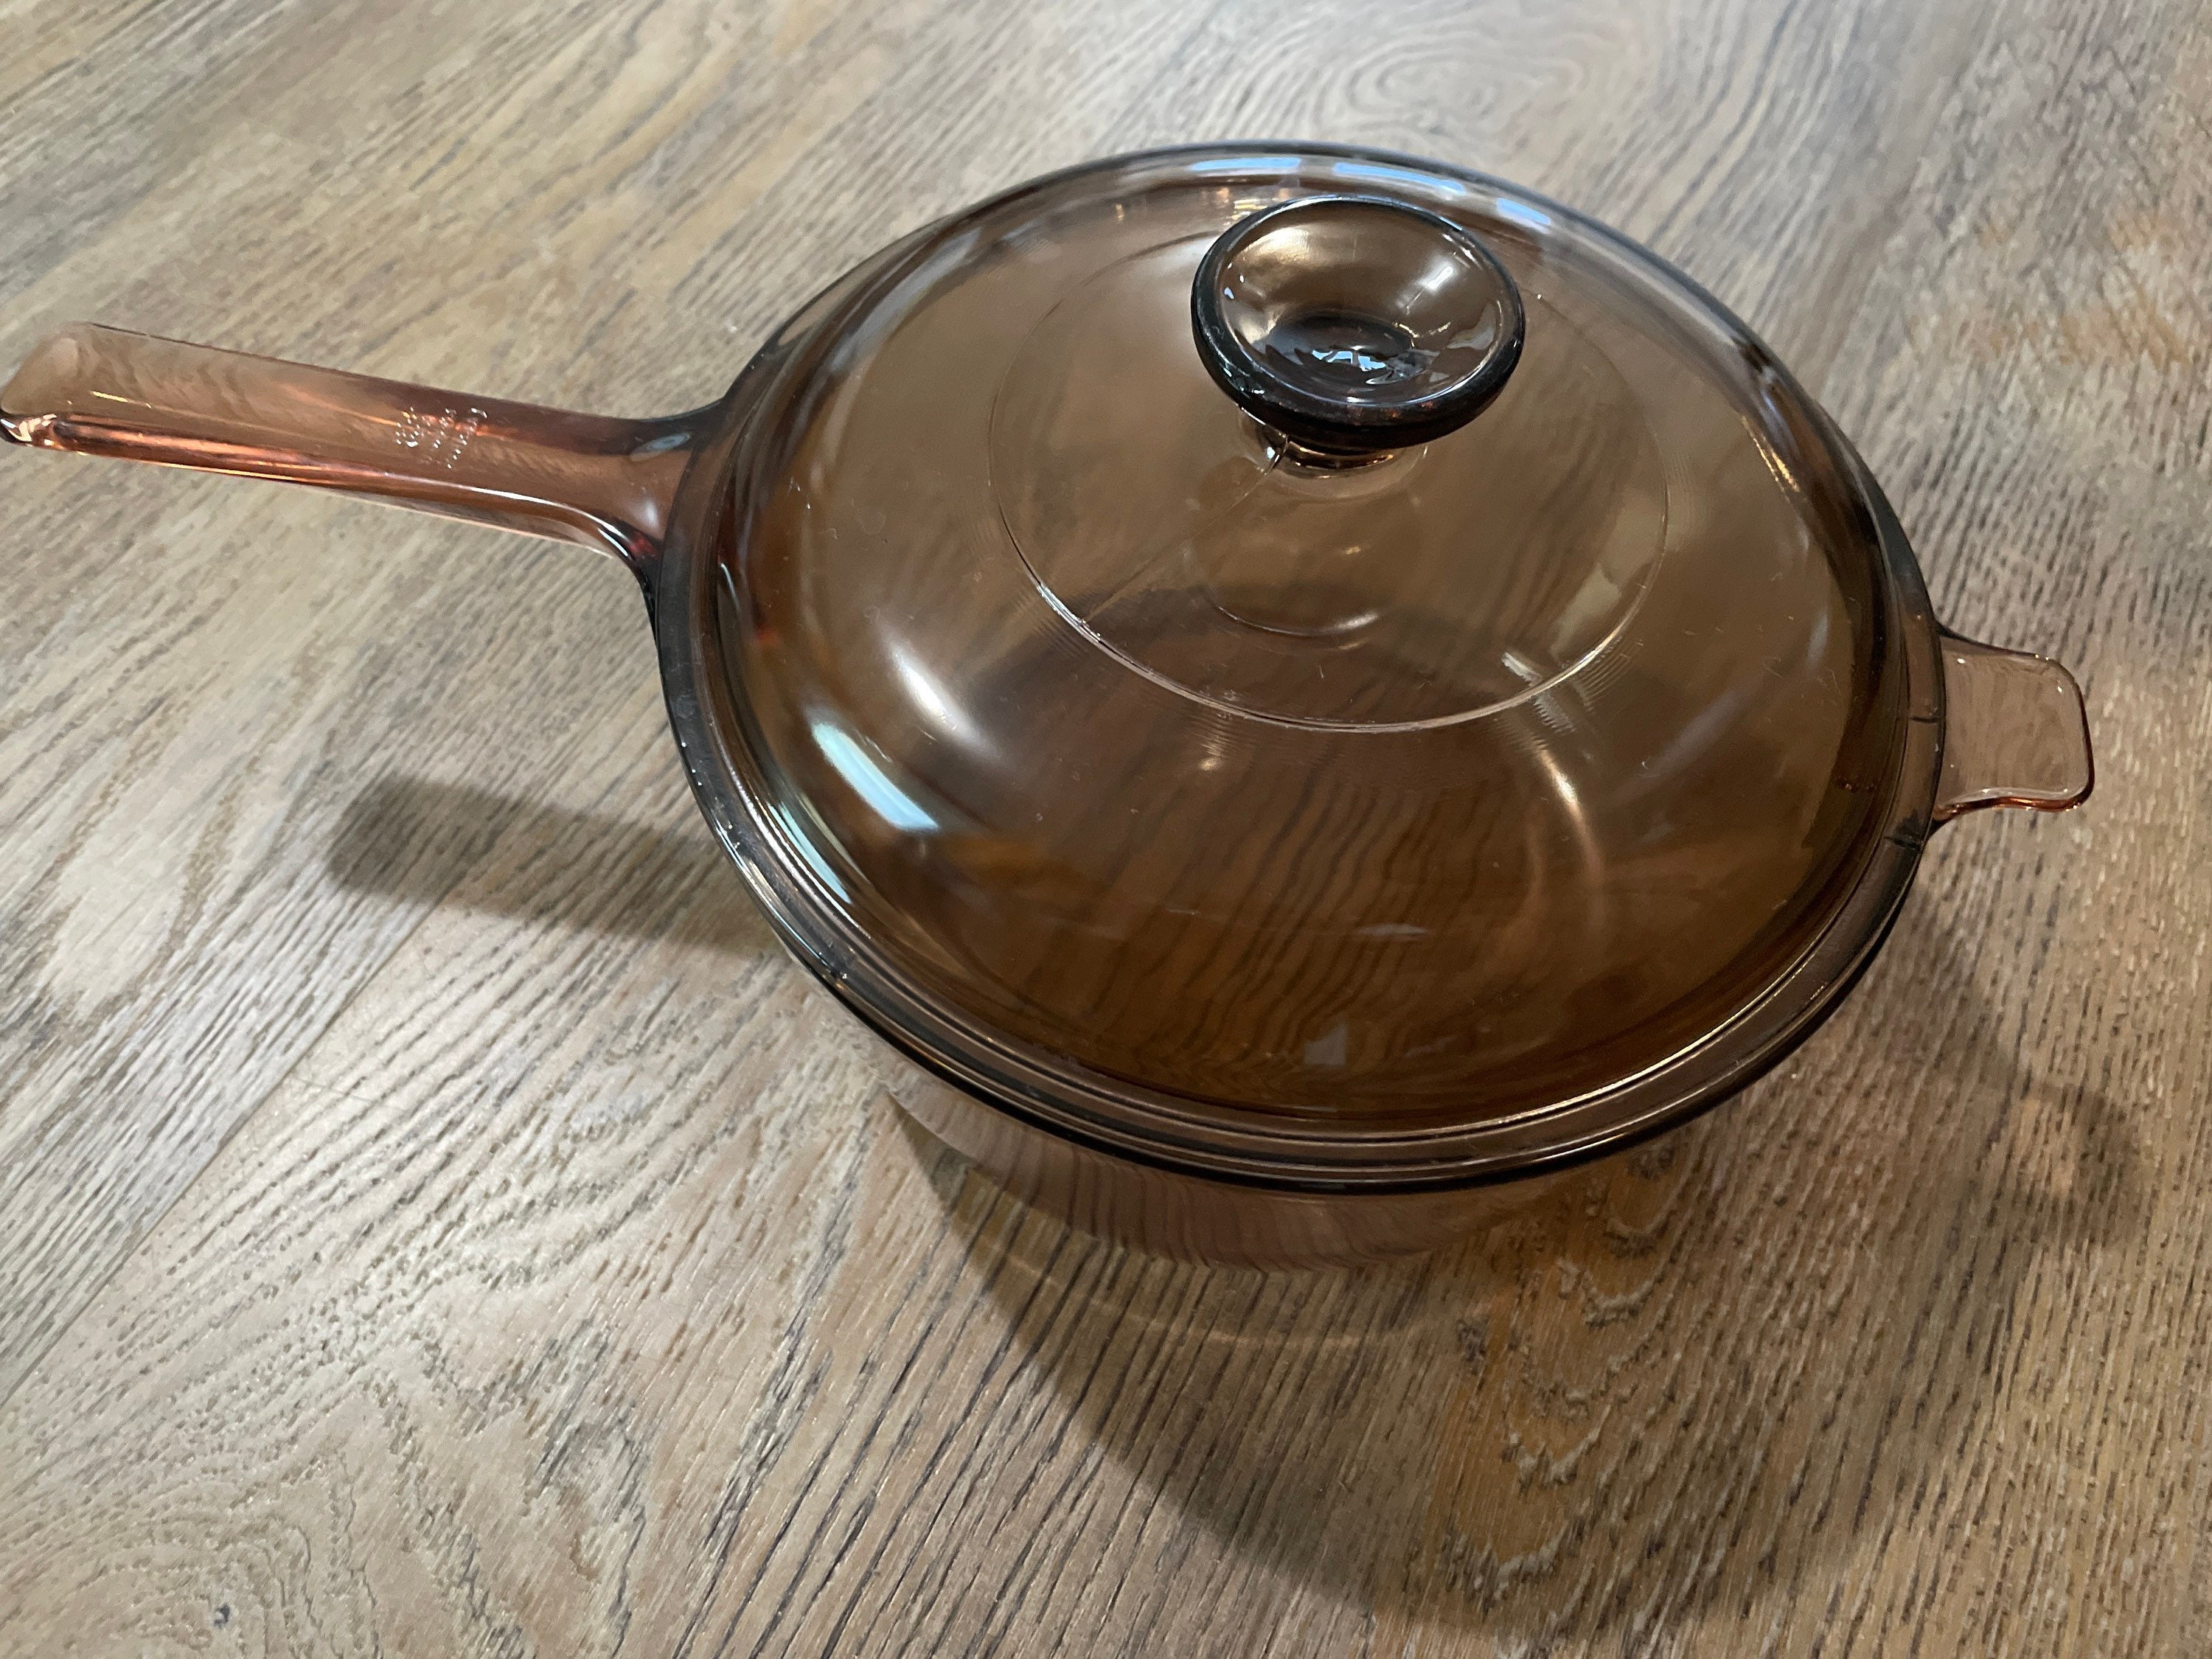 C2 Copper Collection 3 qt Soup Pot with Lid